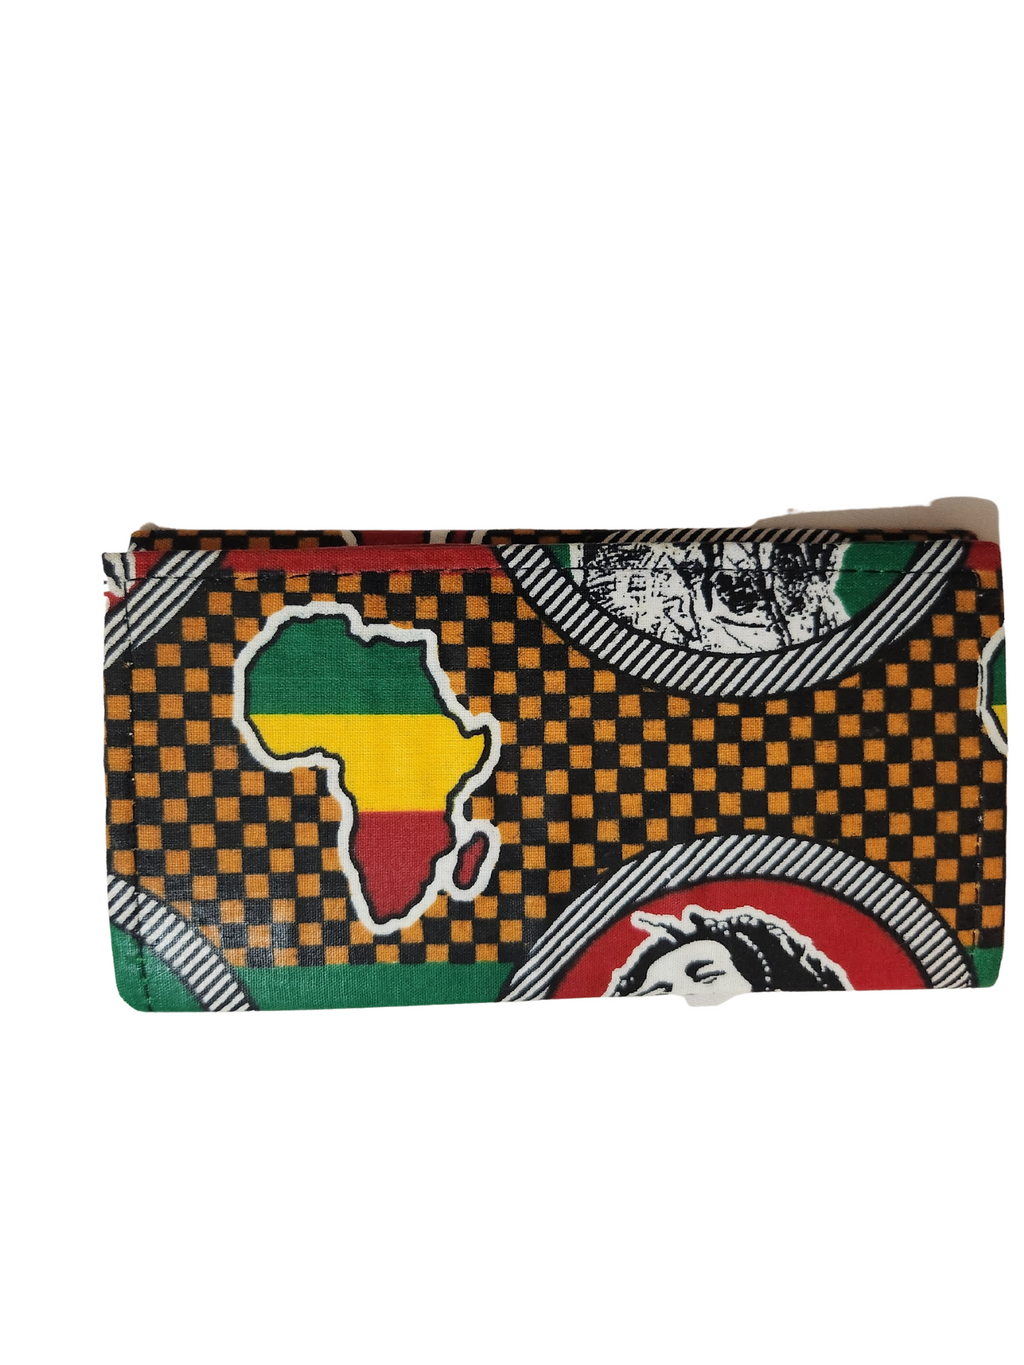 African wallet